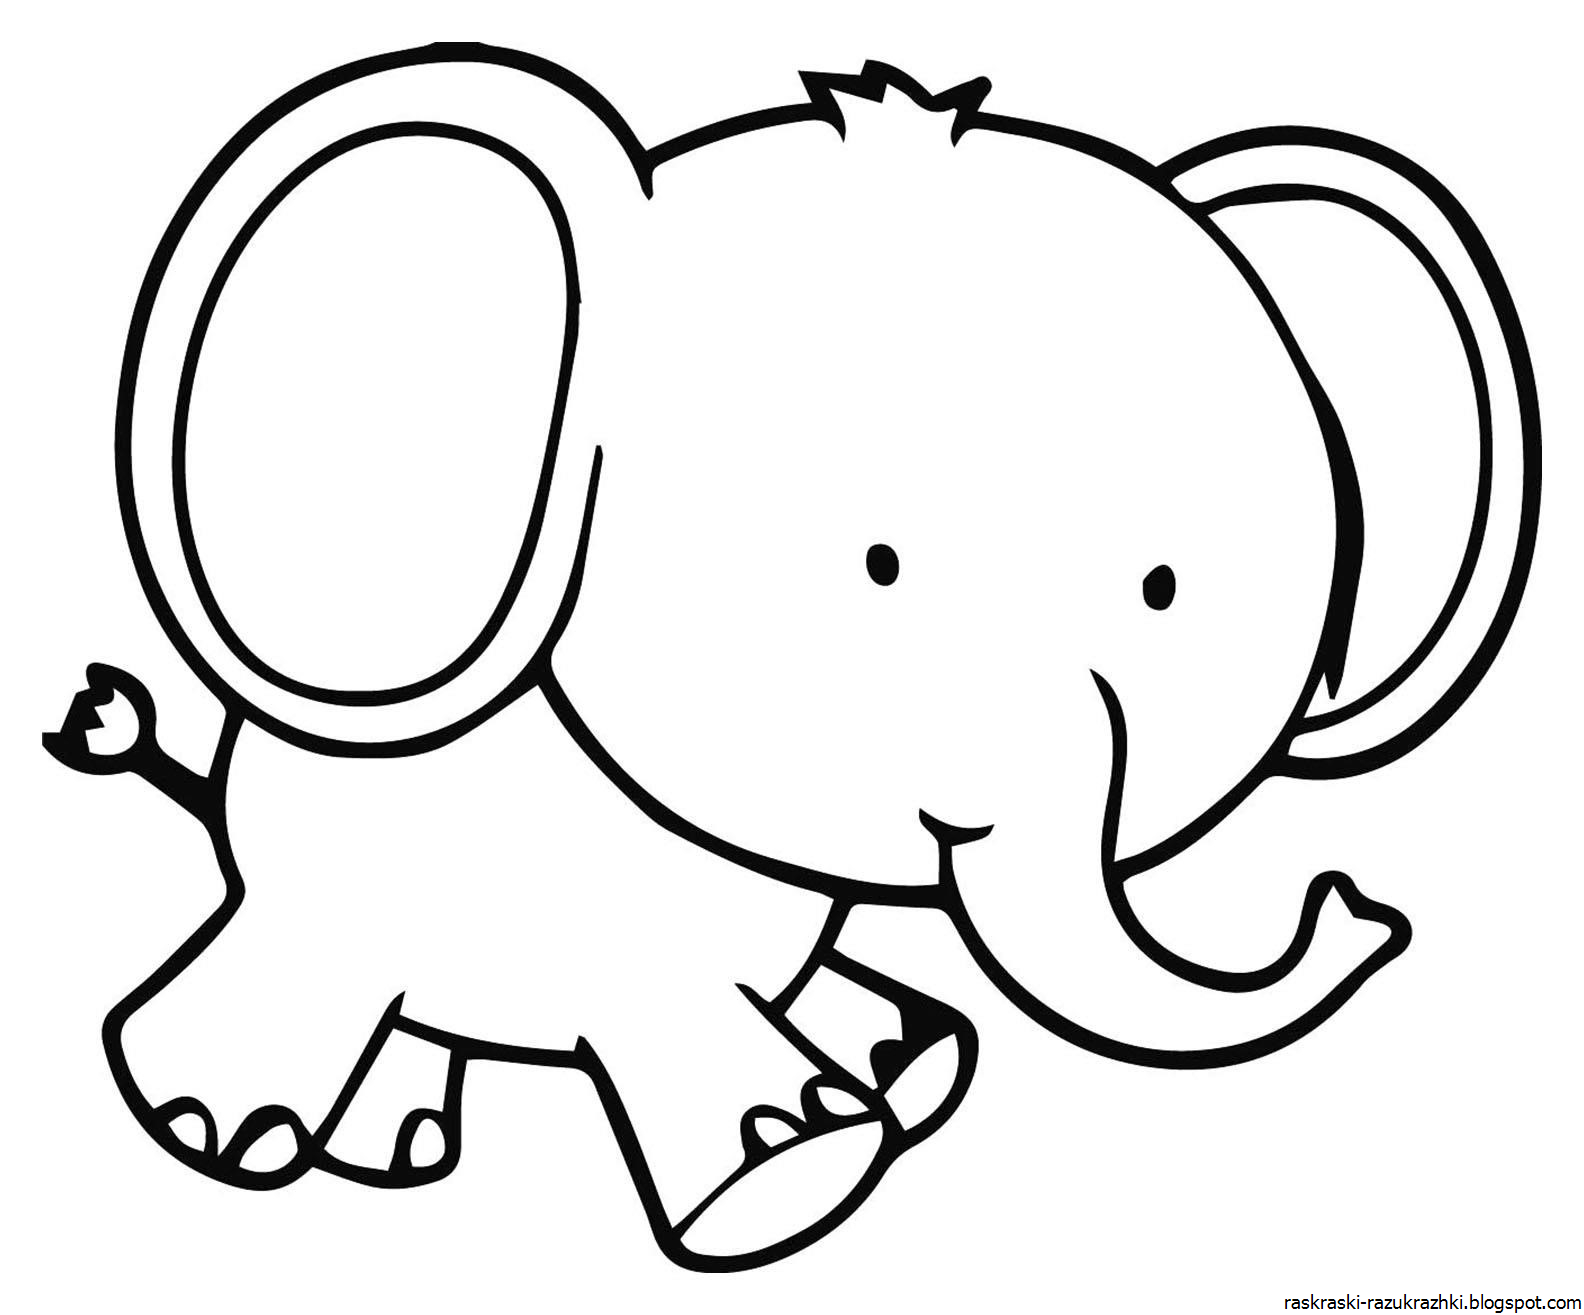 Семья слонов: векторные изображения и иллюстрации, которые можно скачать бесплатно | Freepik